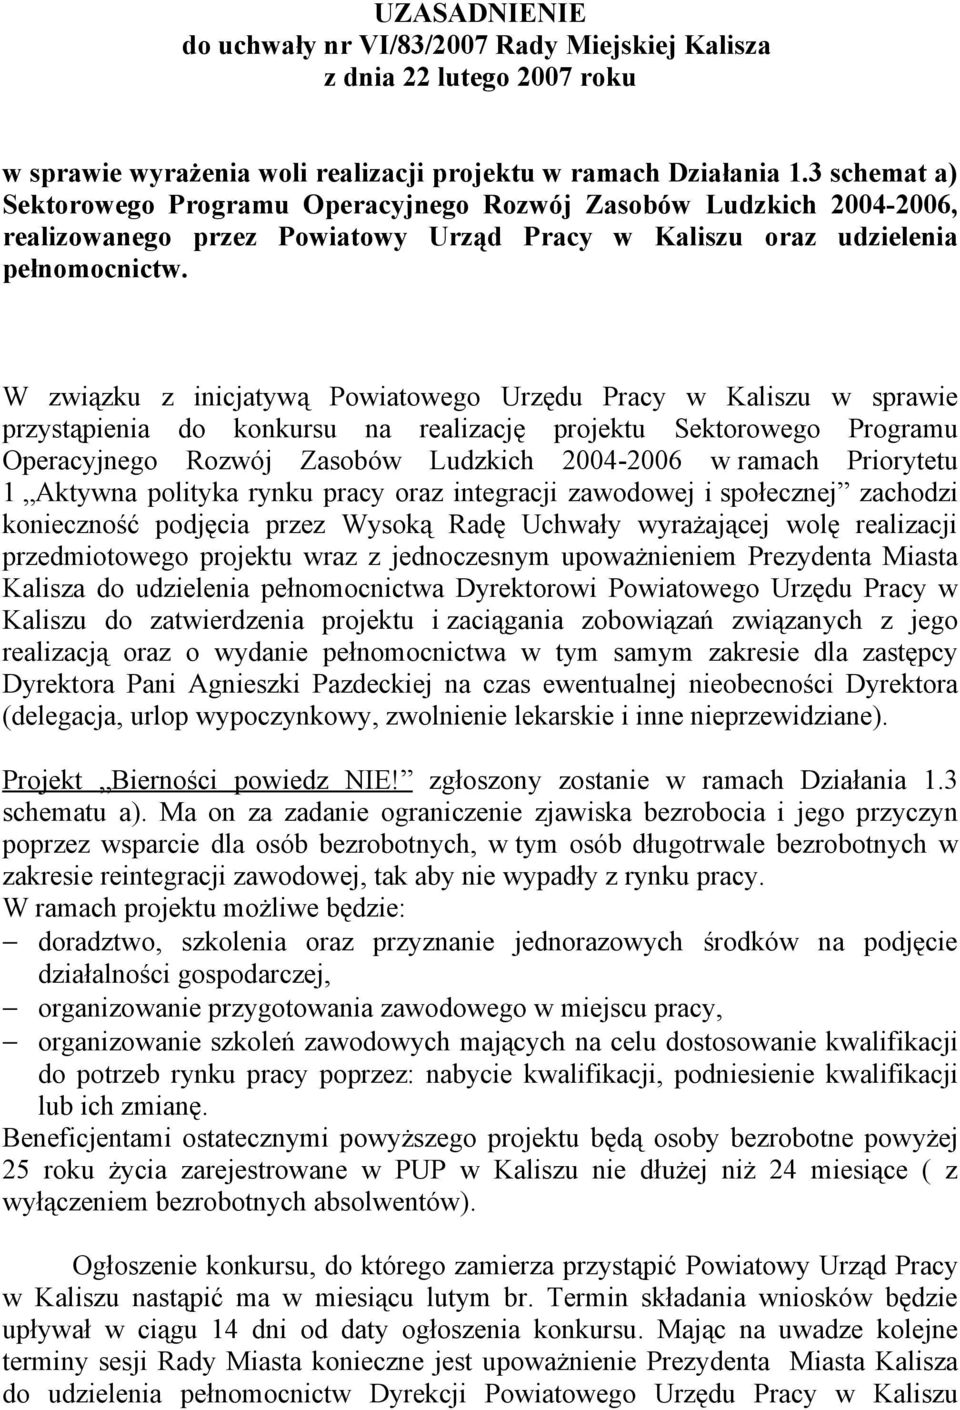 W związku z inicjatywą Powiatowego Urzędu Pracy w Kaliszu w sprawie przystąpienia do konkursu na realizację projektu Sektorowego Programu Operacyjnego Rozwój Zasobów Ludzkich 2004-2006 w ramach